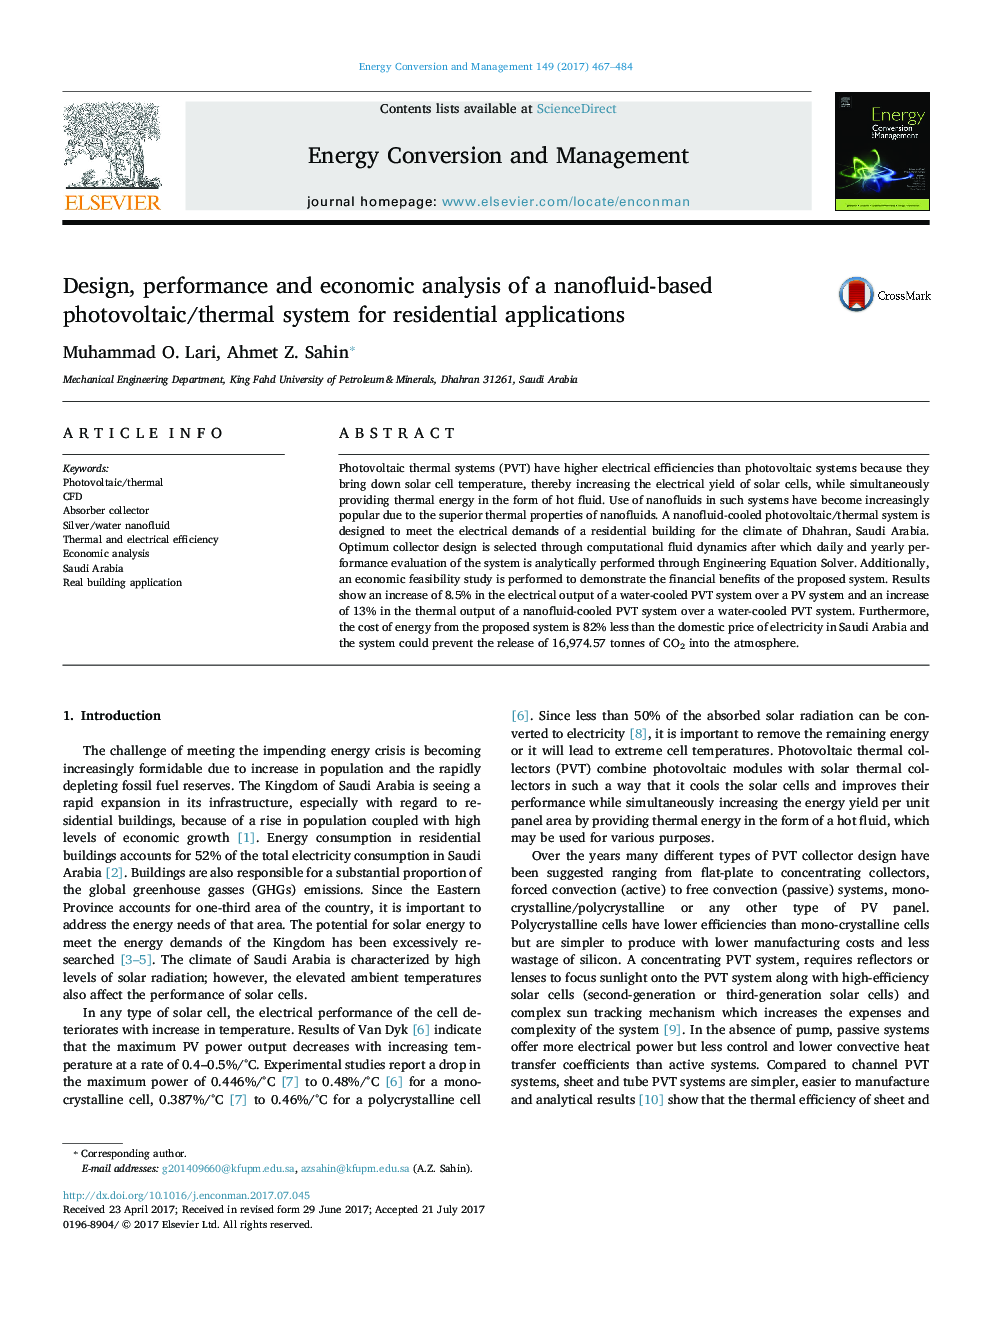 طراحی، عملکرد و تجزیه و تحلیل اقتصادی یک سیستم فتوولتائیک / حرارتی مبتنی بر نانوفیلد برای کاربردهای مسکونی 